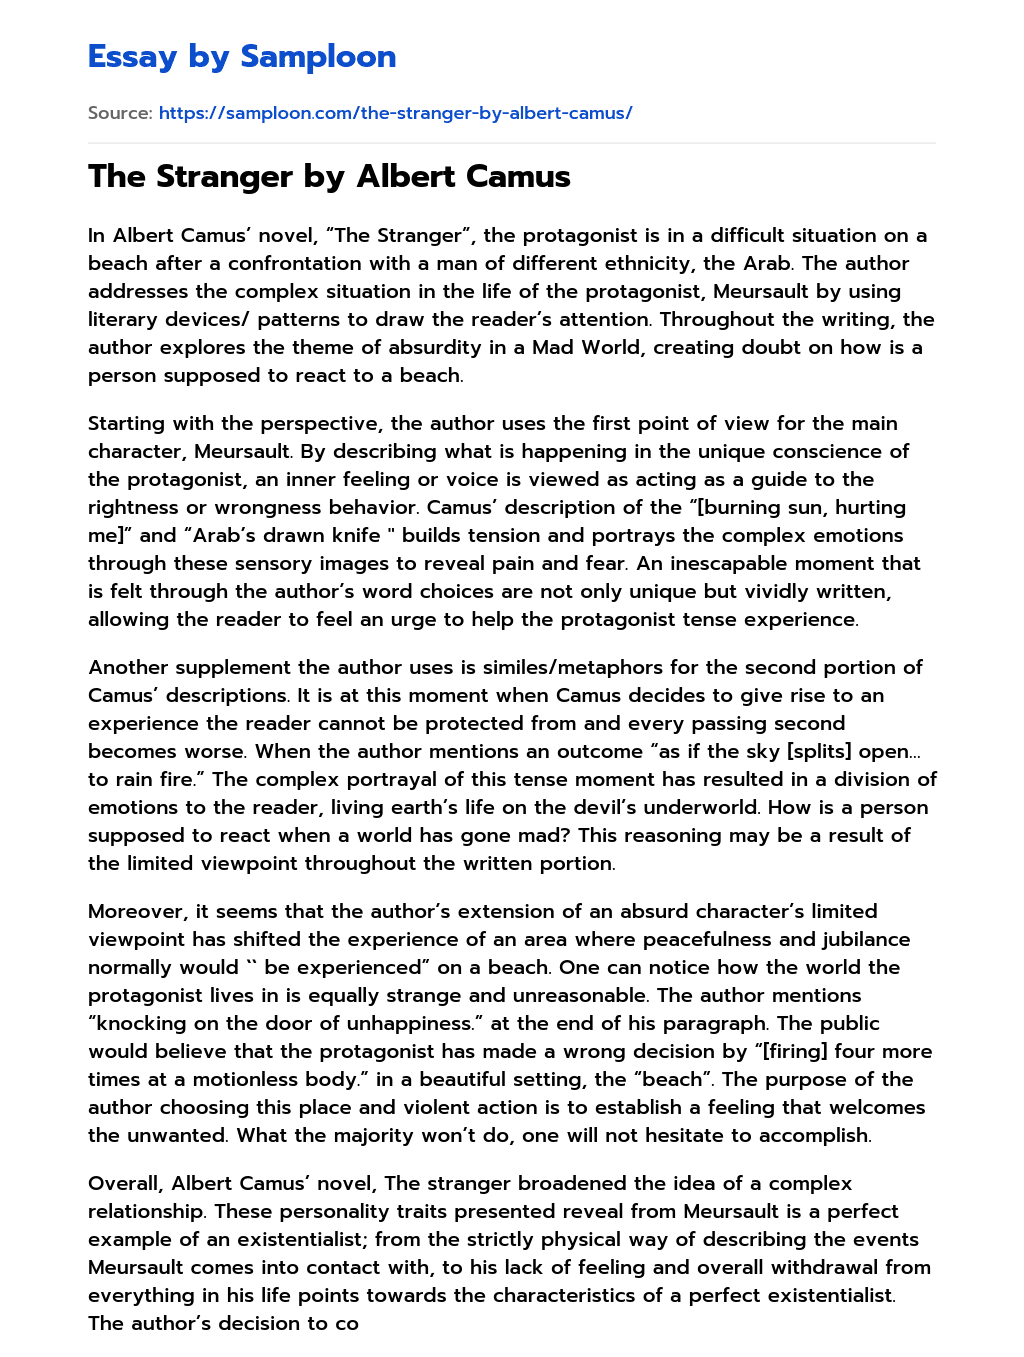 essay topics for the stranger